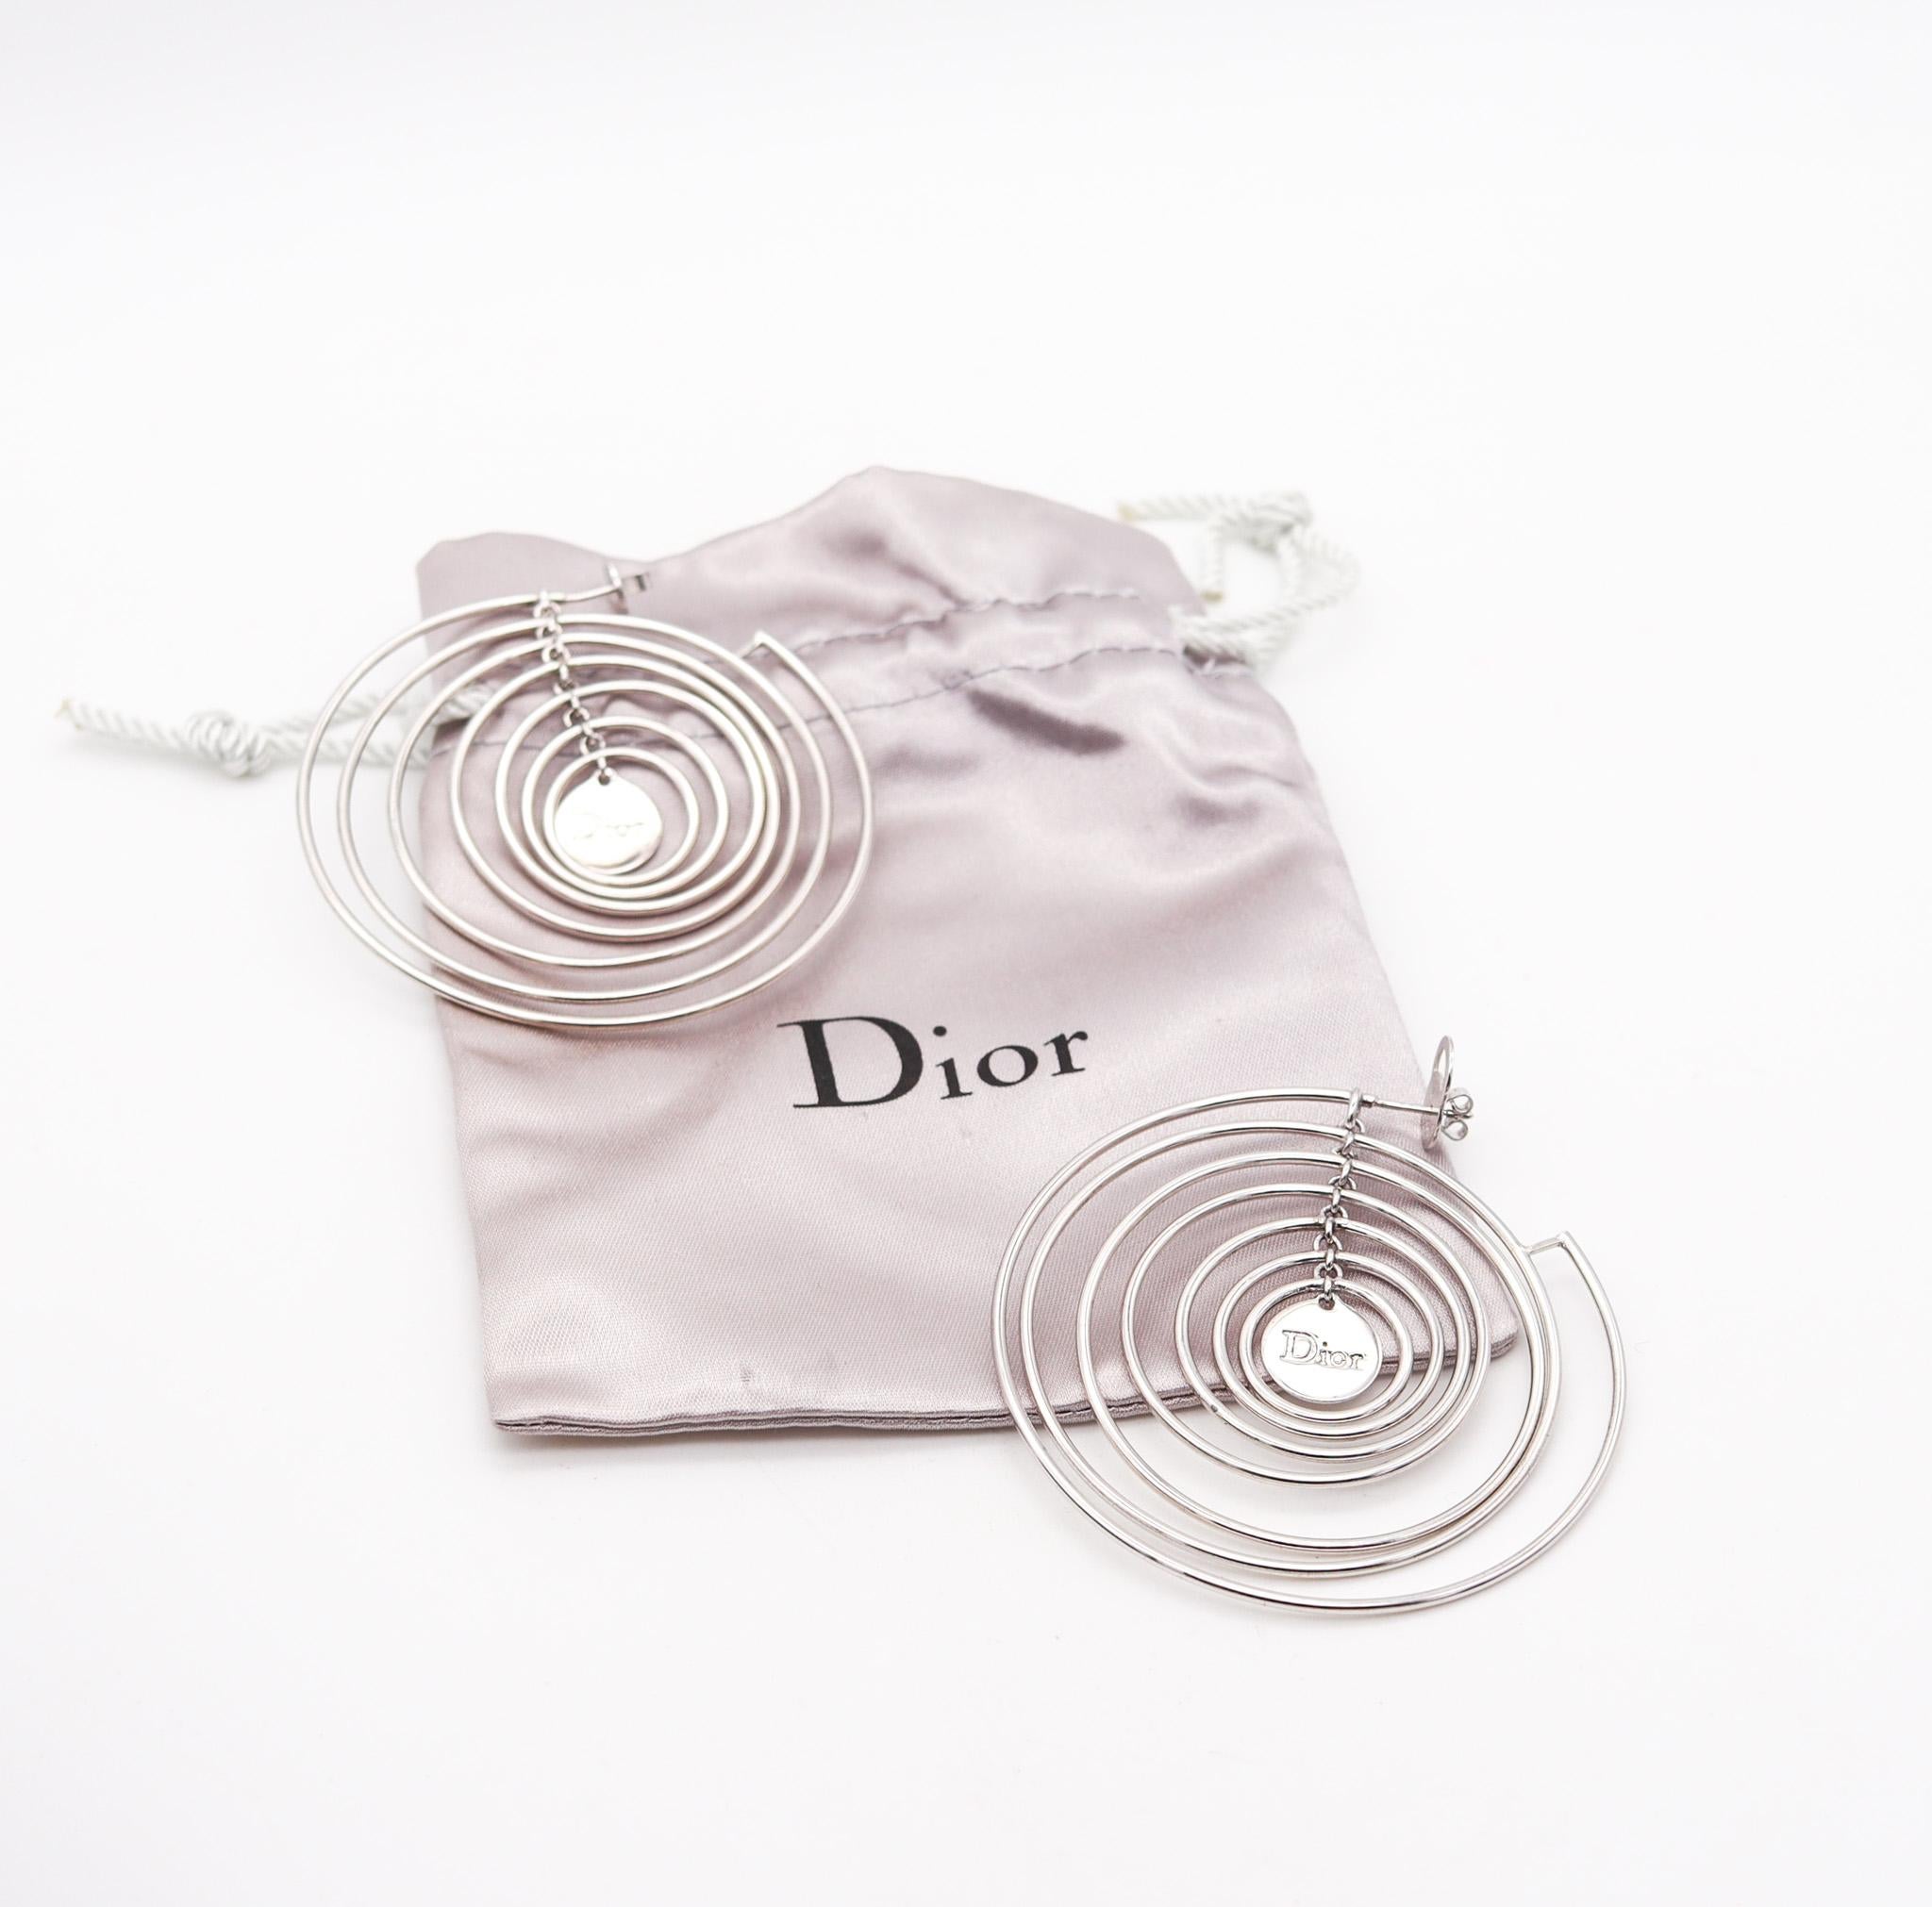 Boucles d'oreilles en forme de cercles cinétiques sculpturaux conçues par Christian Dior.

Fabuleuses boucles d'oreilles cinétiques, créées à Paris dans l'atelier de Christian Dior. Ces boucles d'oreilles ultra-modernes sont très artistiques et ont